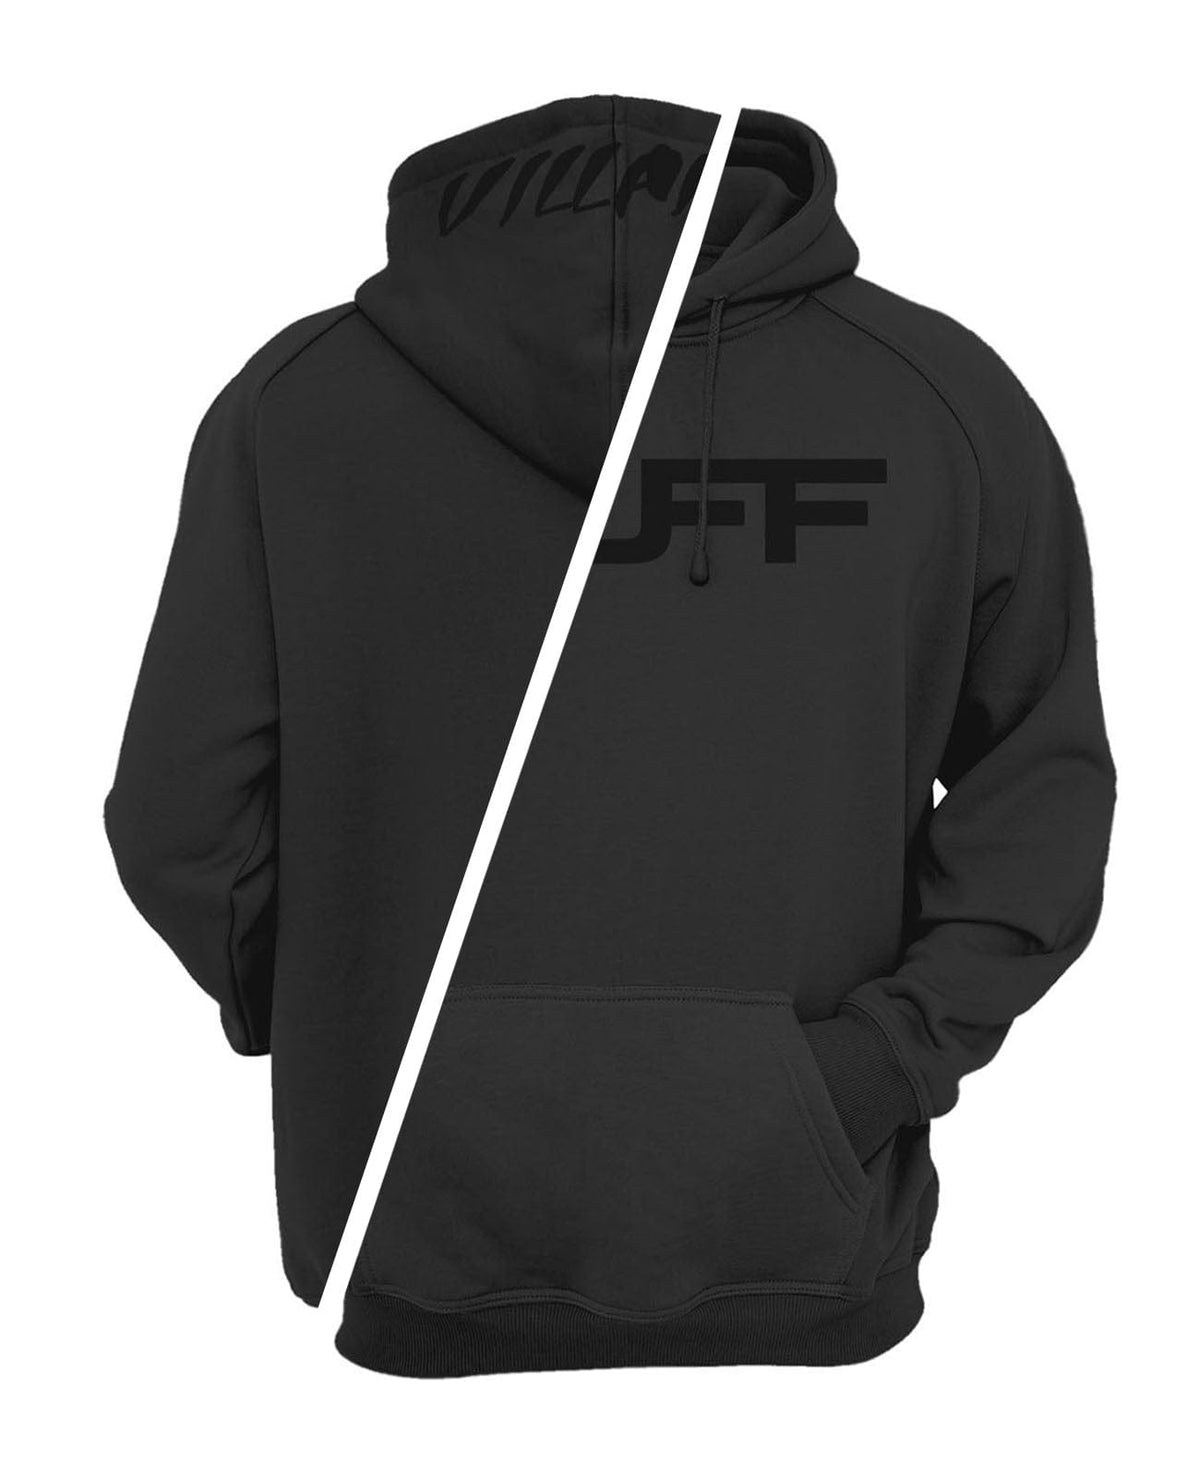 Solid Black TUFF Apocalyptic Hooded Sweatshirt TuffWraps.com